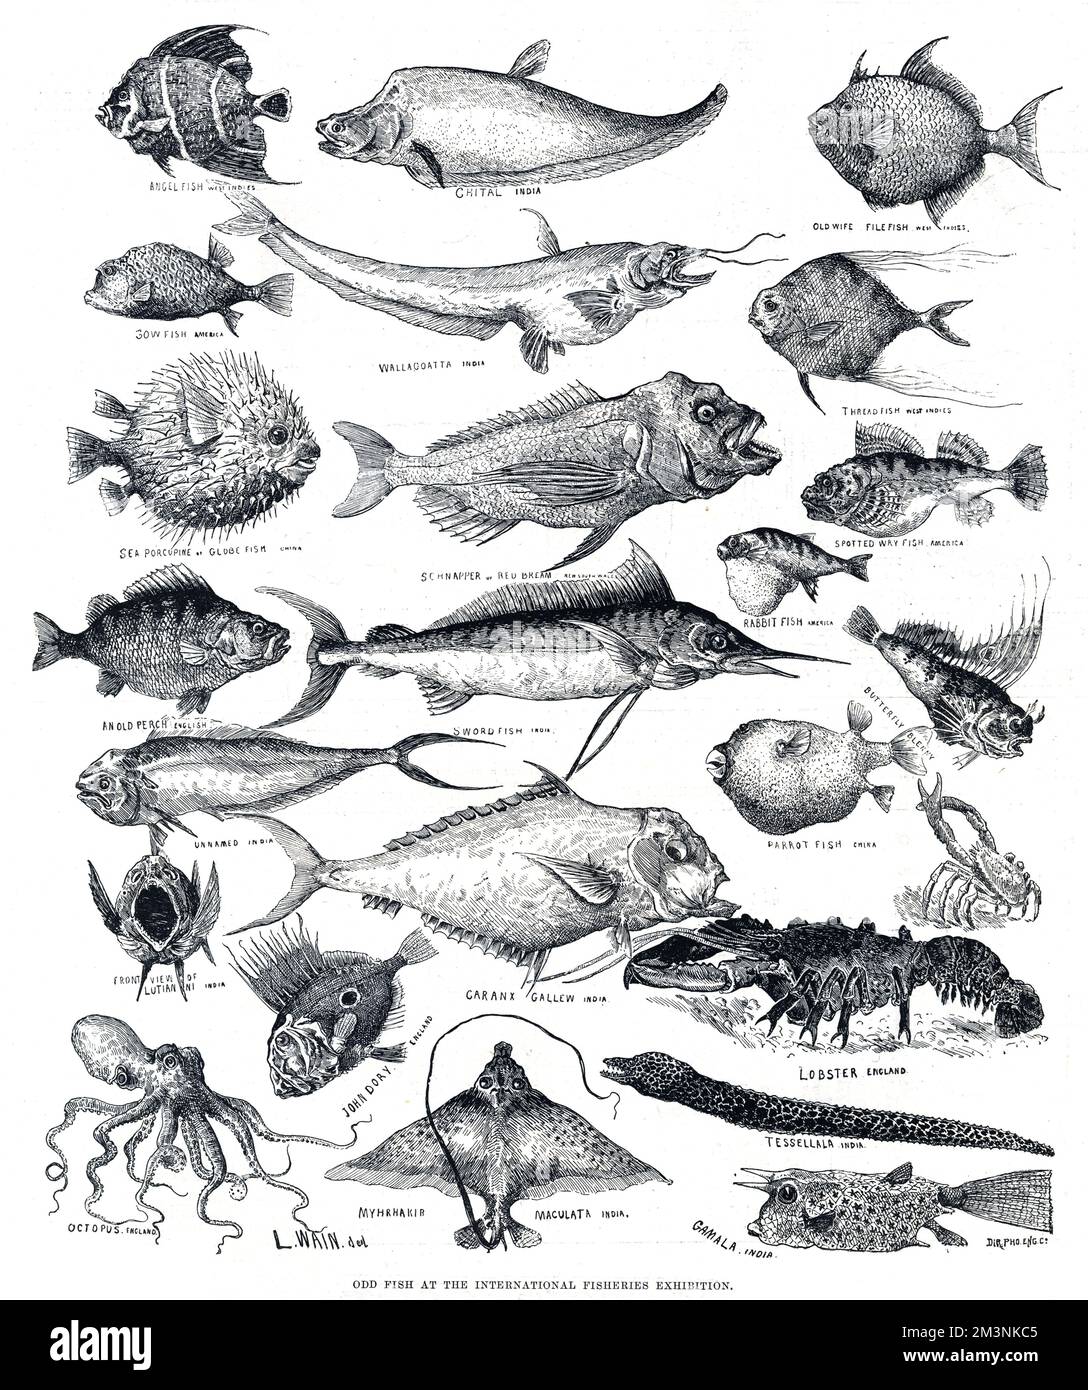 Indian threadfish - Wikipedia